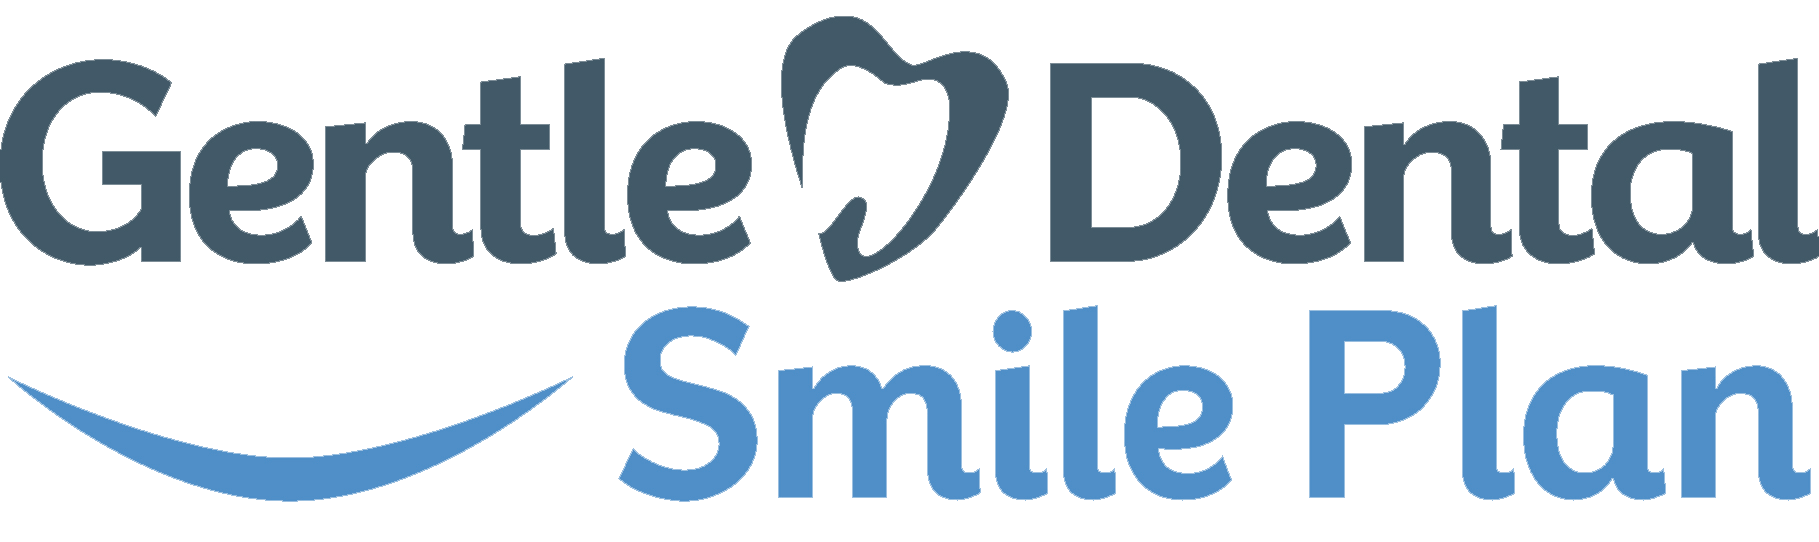 Gentle Dental Smile Plan Logo